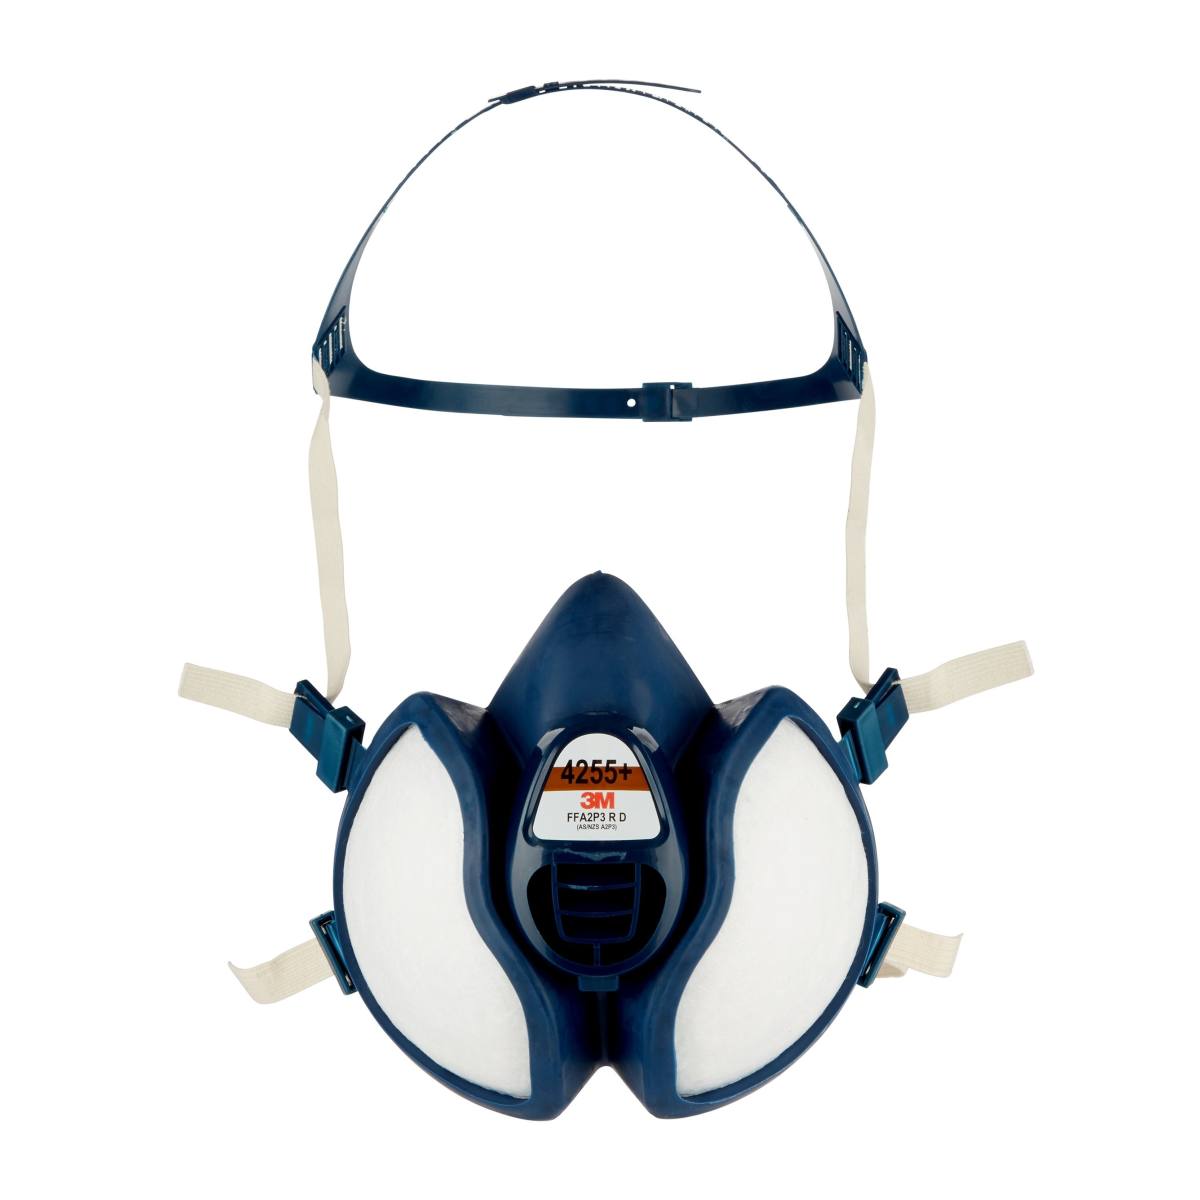 3M Masque protection respiratoire 8710 E FFP1 NR D